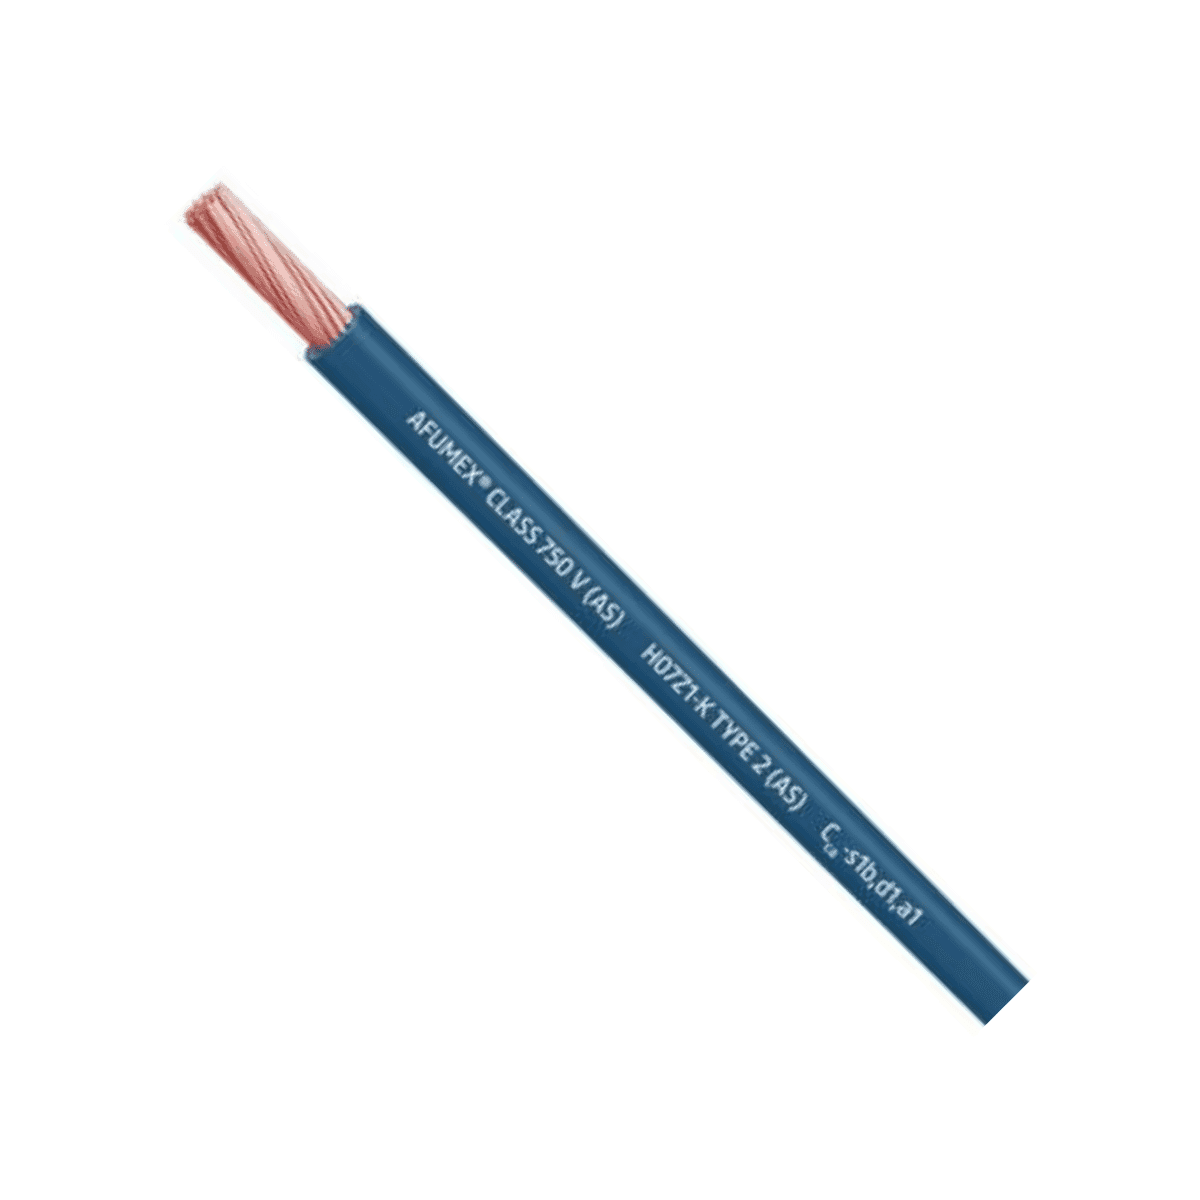 Cable Afumex H07Z1-K AS 750 1x2.5mm2 azul - Caja de 200 metros con referencia 20193984 de la marca PRYSMIAN